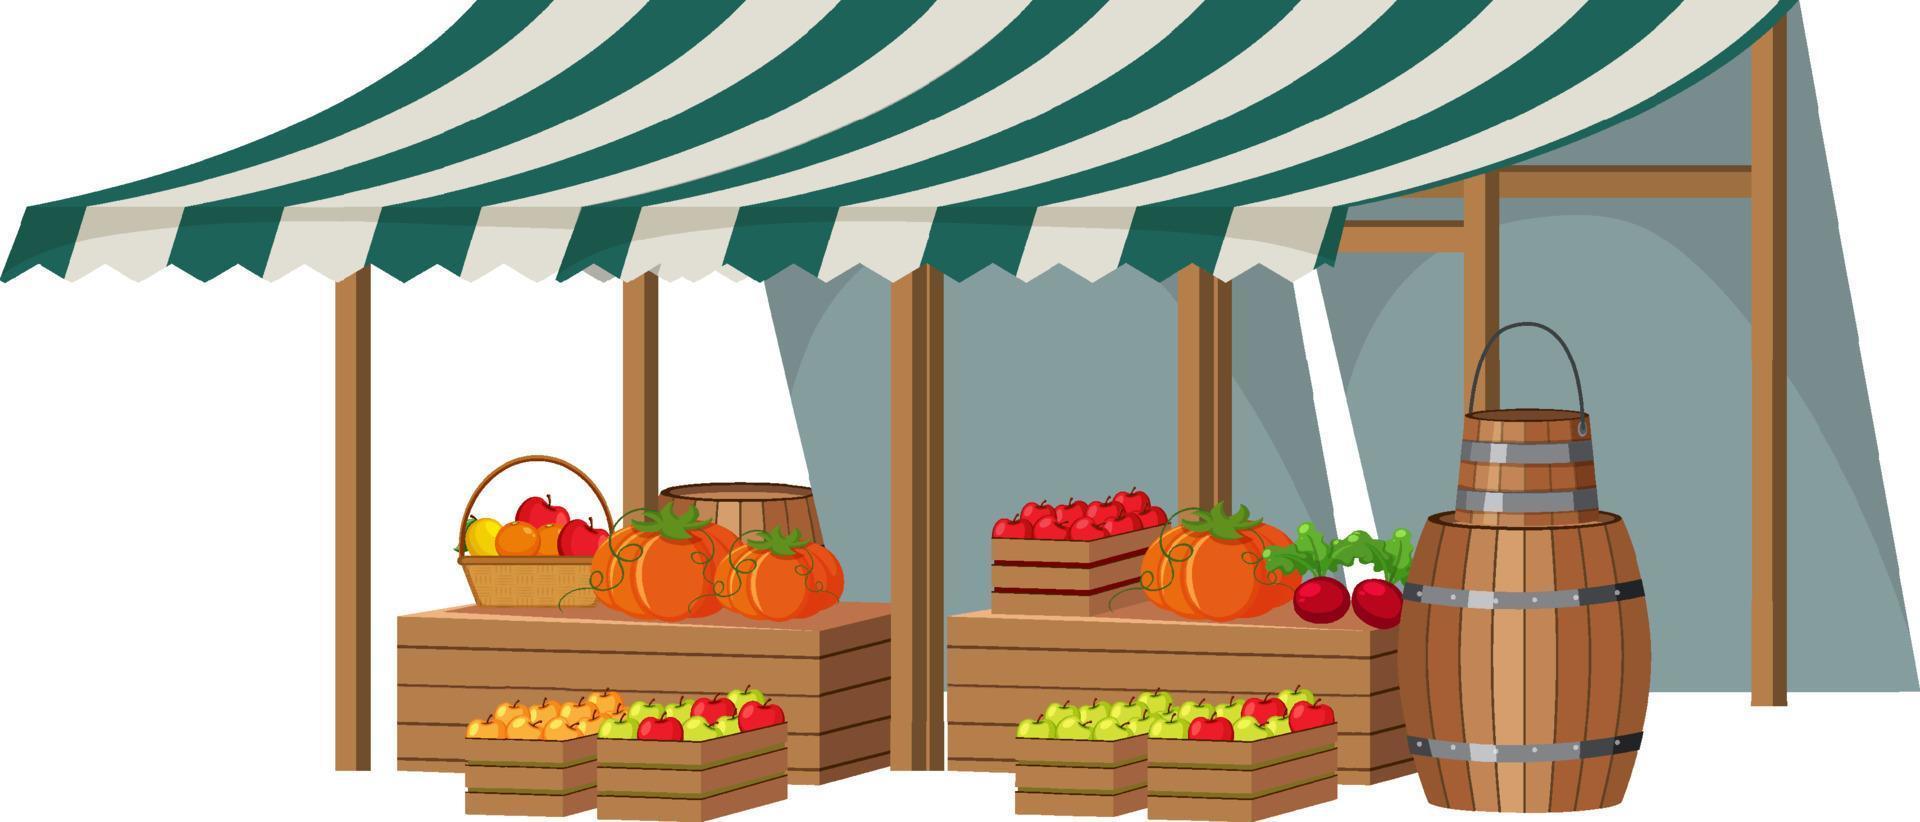 concept de marché aux puces avec magasin de fruits vecteur